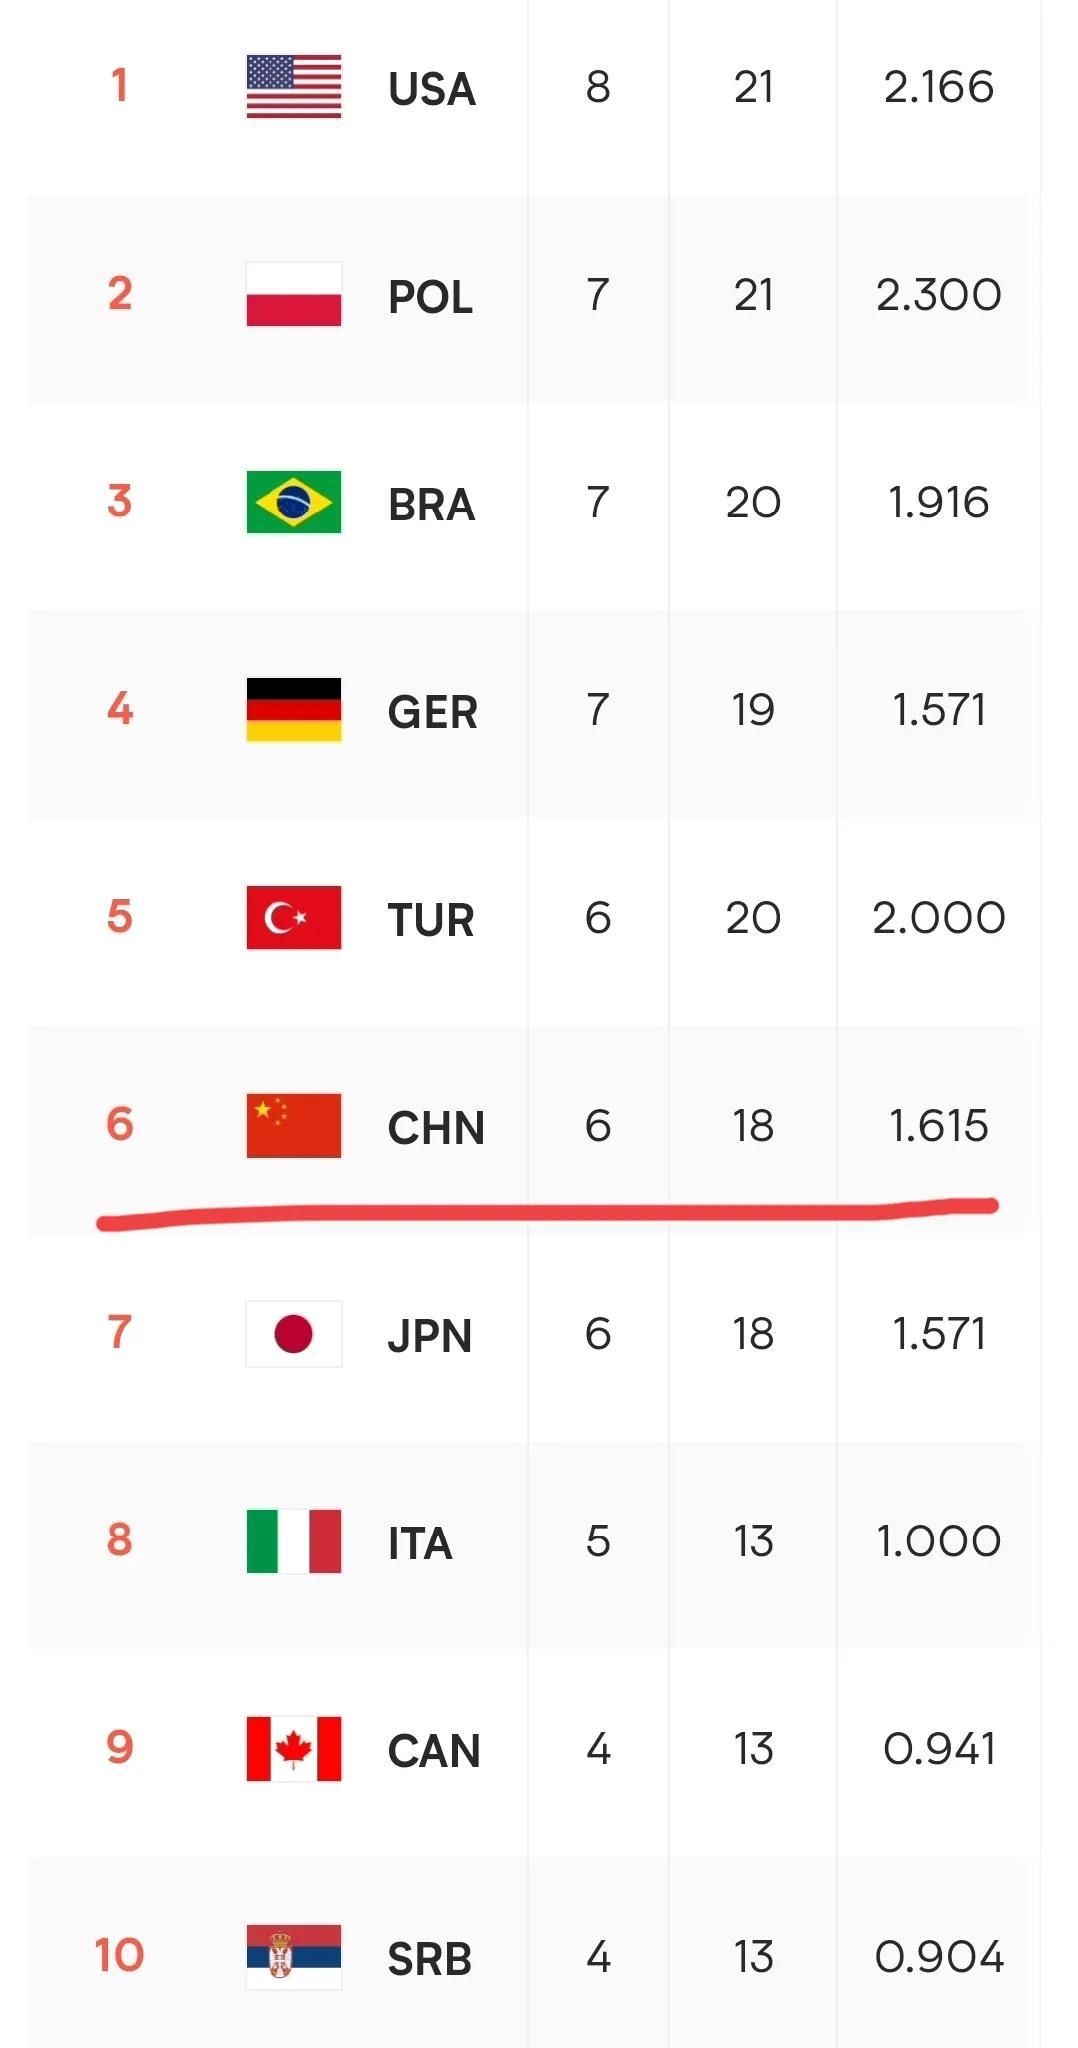  第九轮比赛结束，中国女排下滑到第六。
第一，美国
第二，波兰
第三，巴西
第四